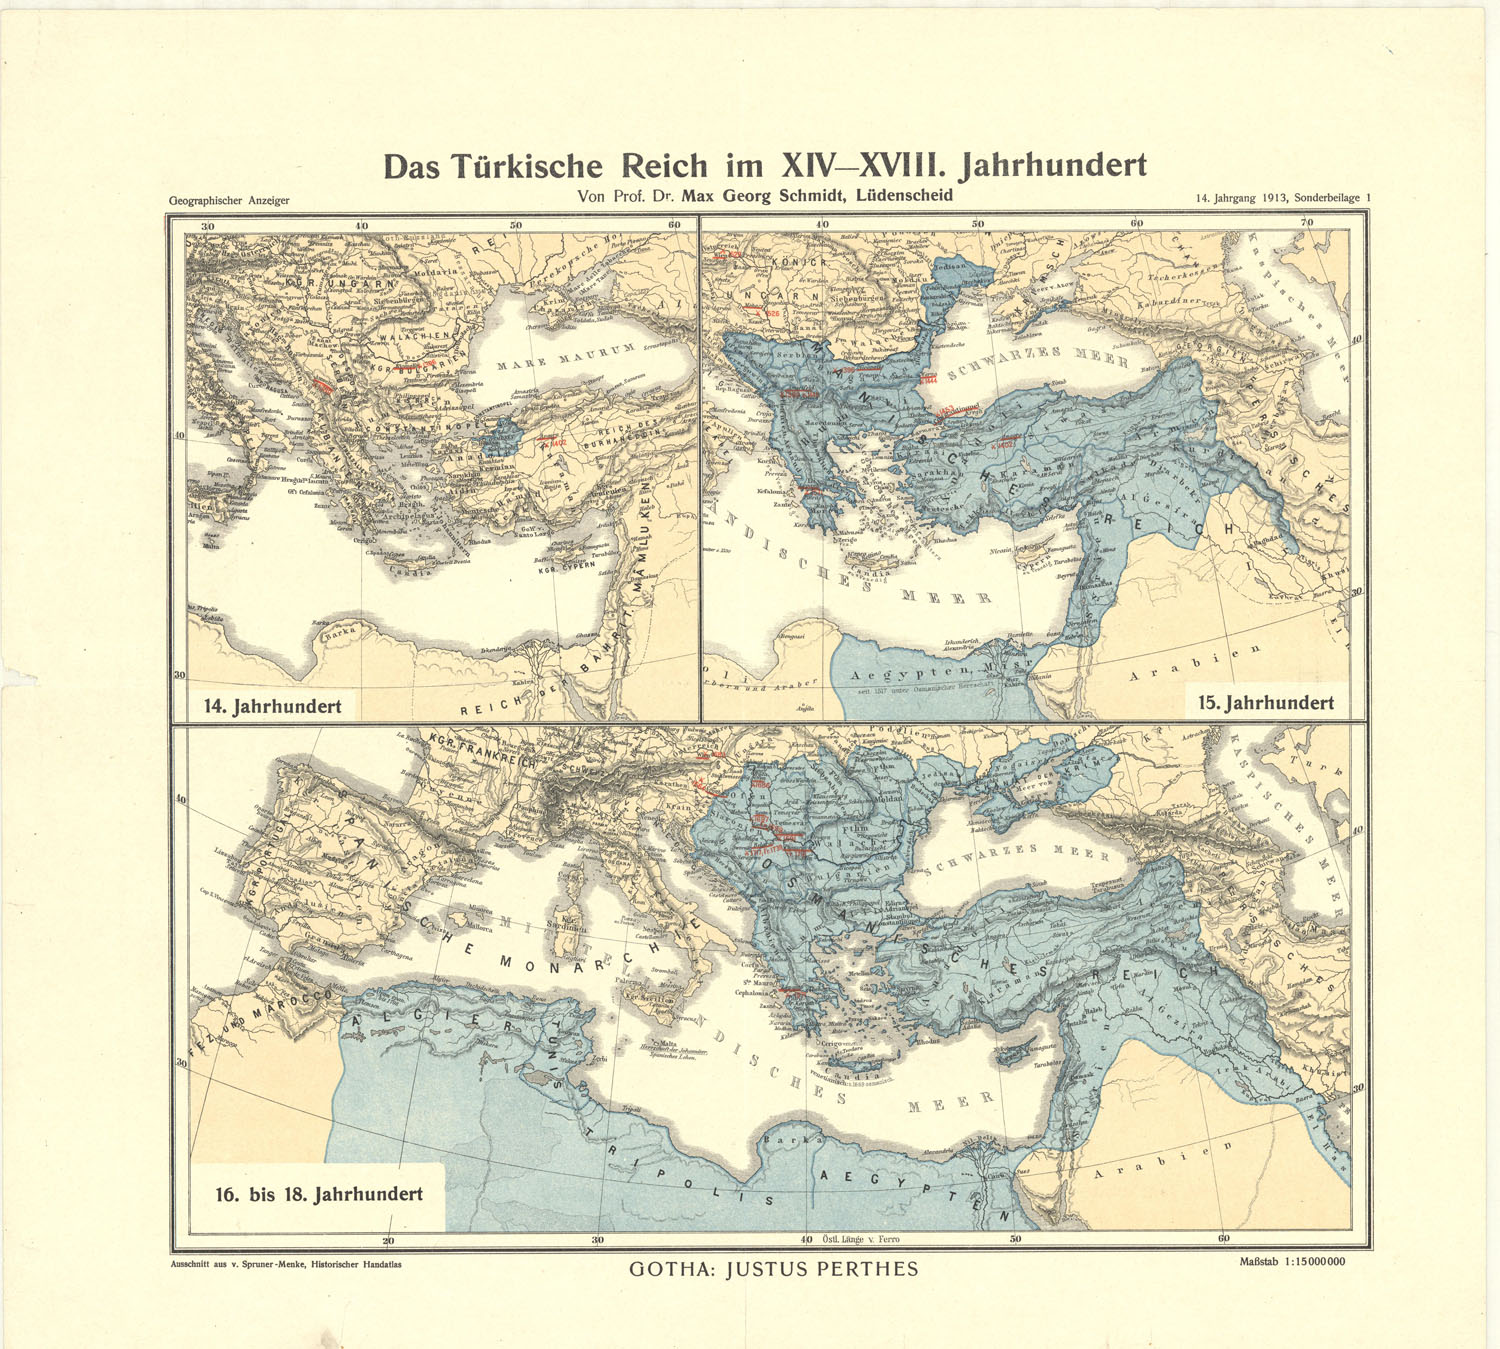 Venerdì Cartografico – M. G. Schmidt, Das Turkische Reich im XIV-XVIII. Jahrhundert, Justus Perthes, Gotha, 1913